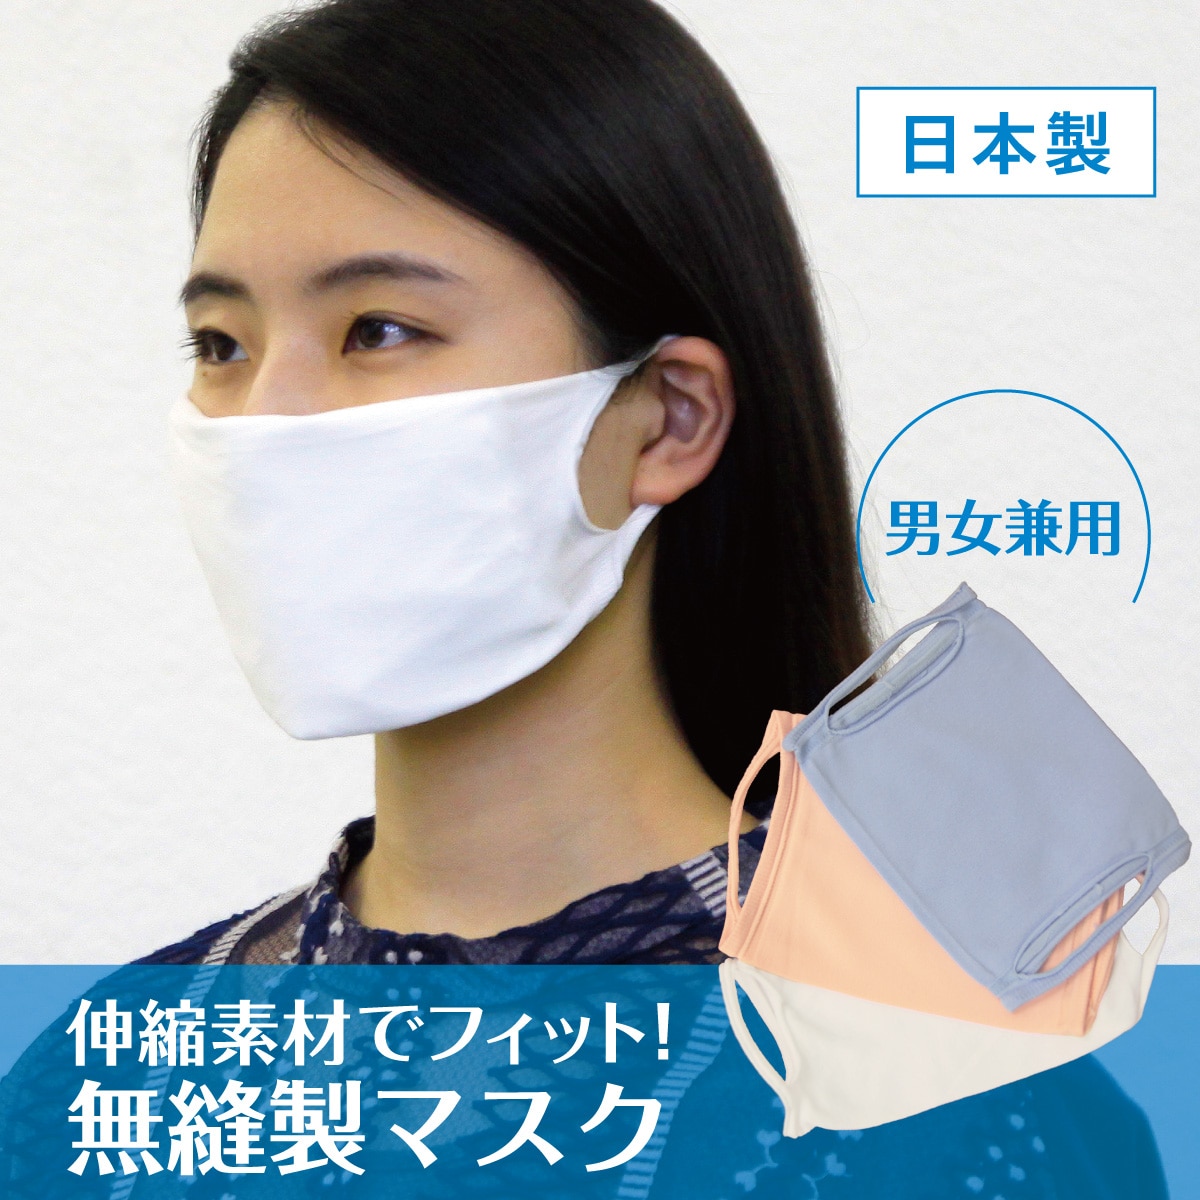 洗える布マスク 無縫製タイプ 日本製